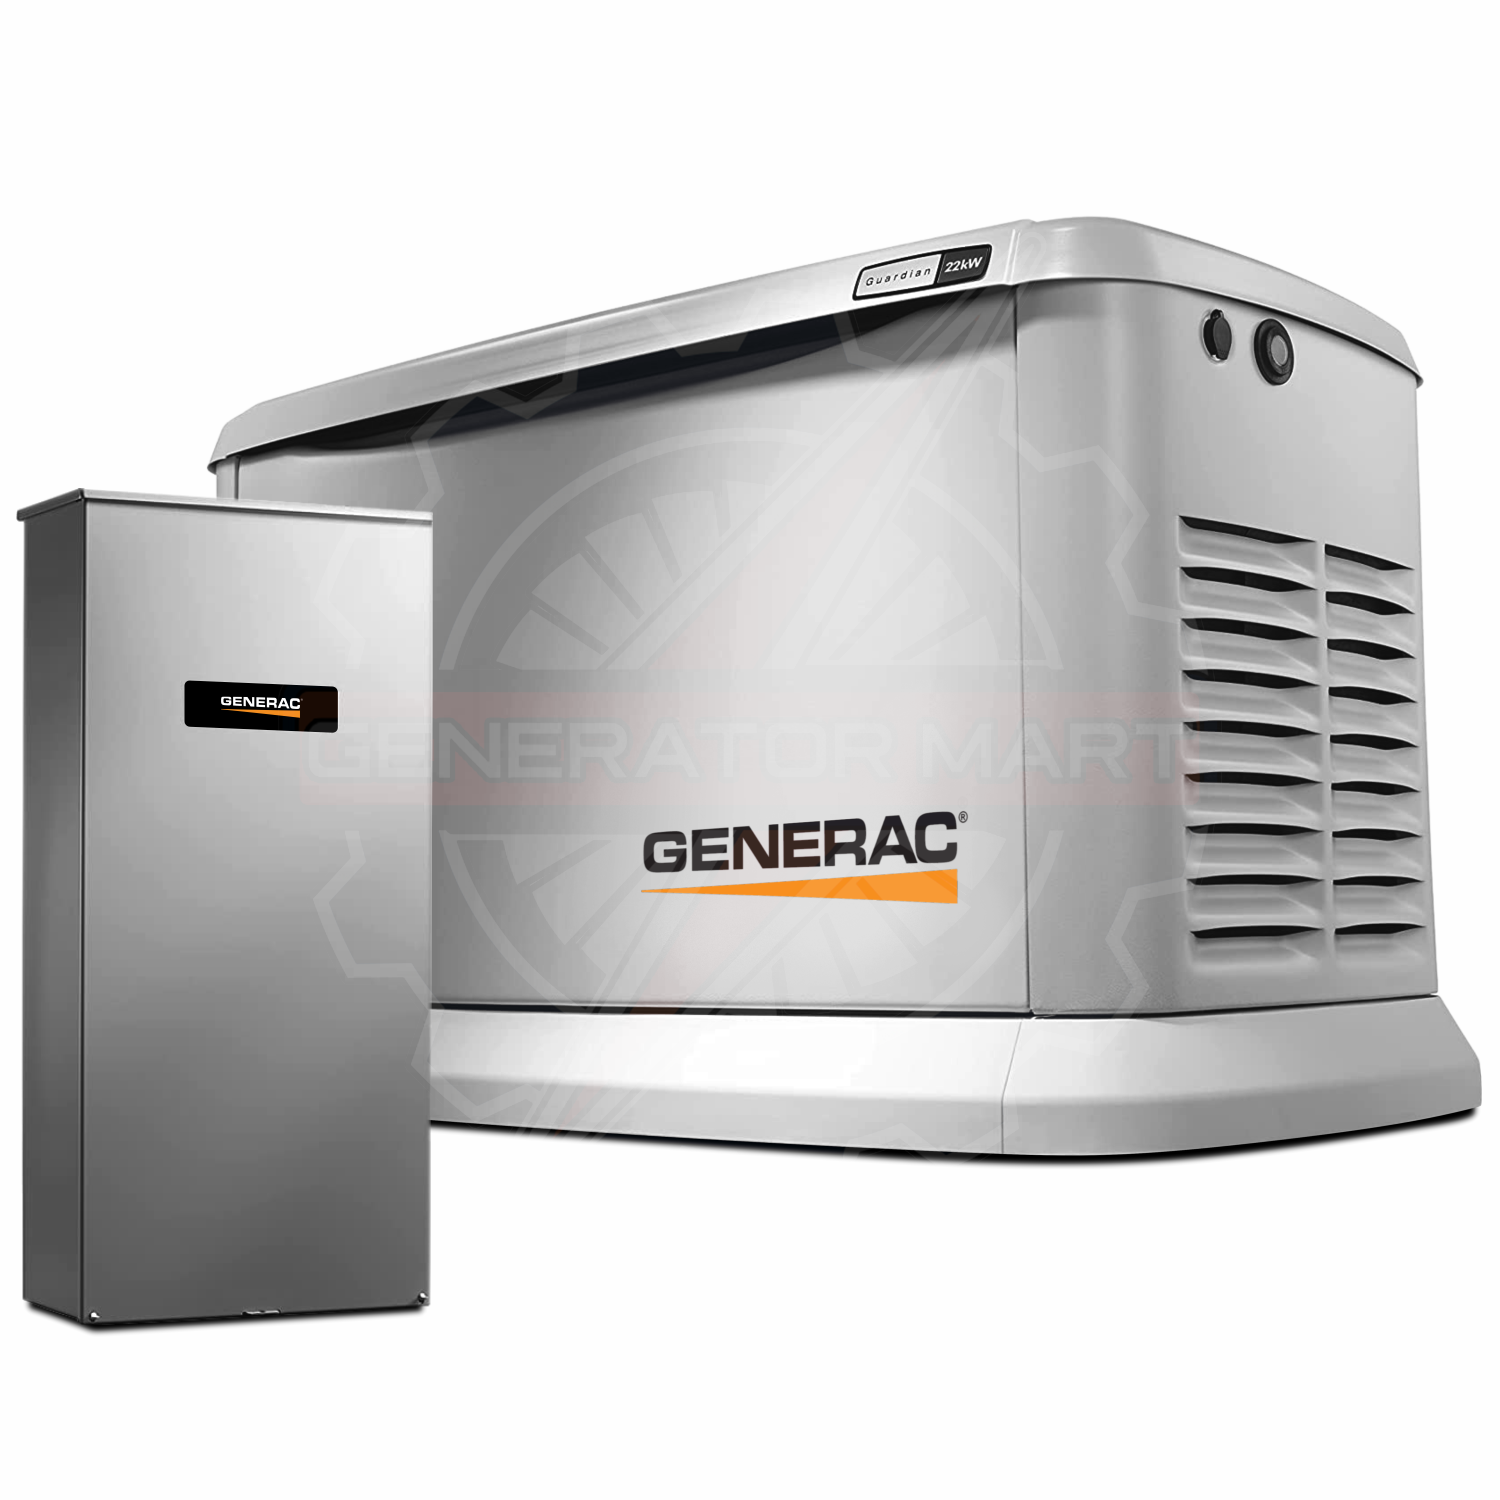 Generac 18kW Standby Generator W/ 200A Transfer Switch- 7228